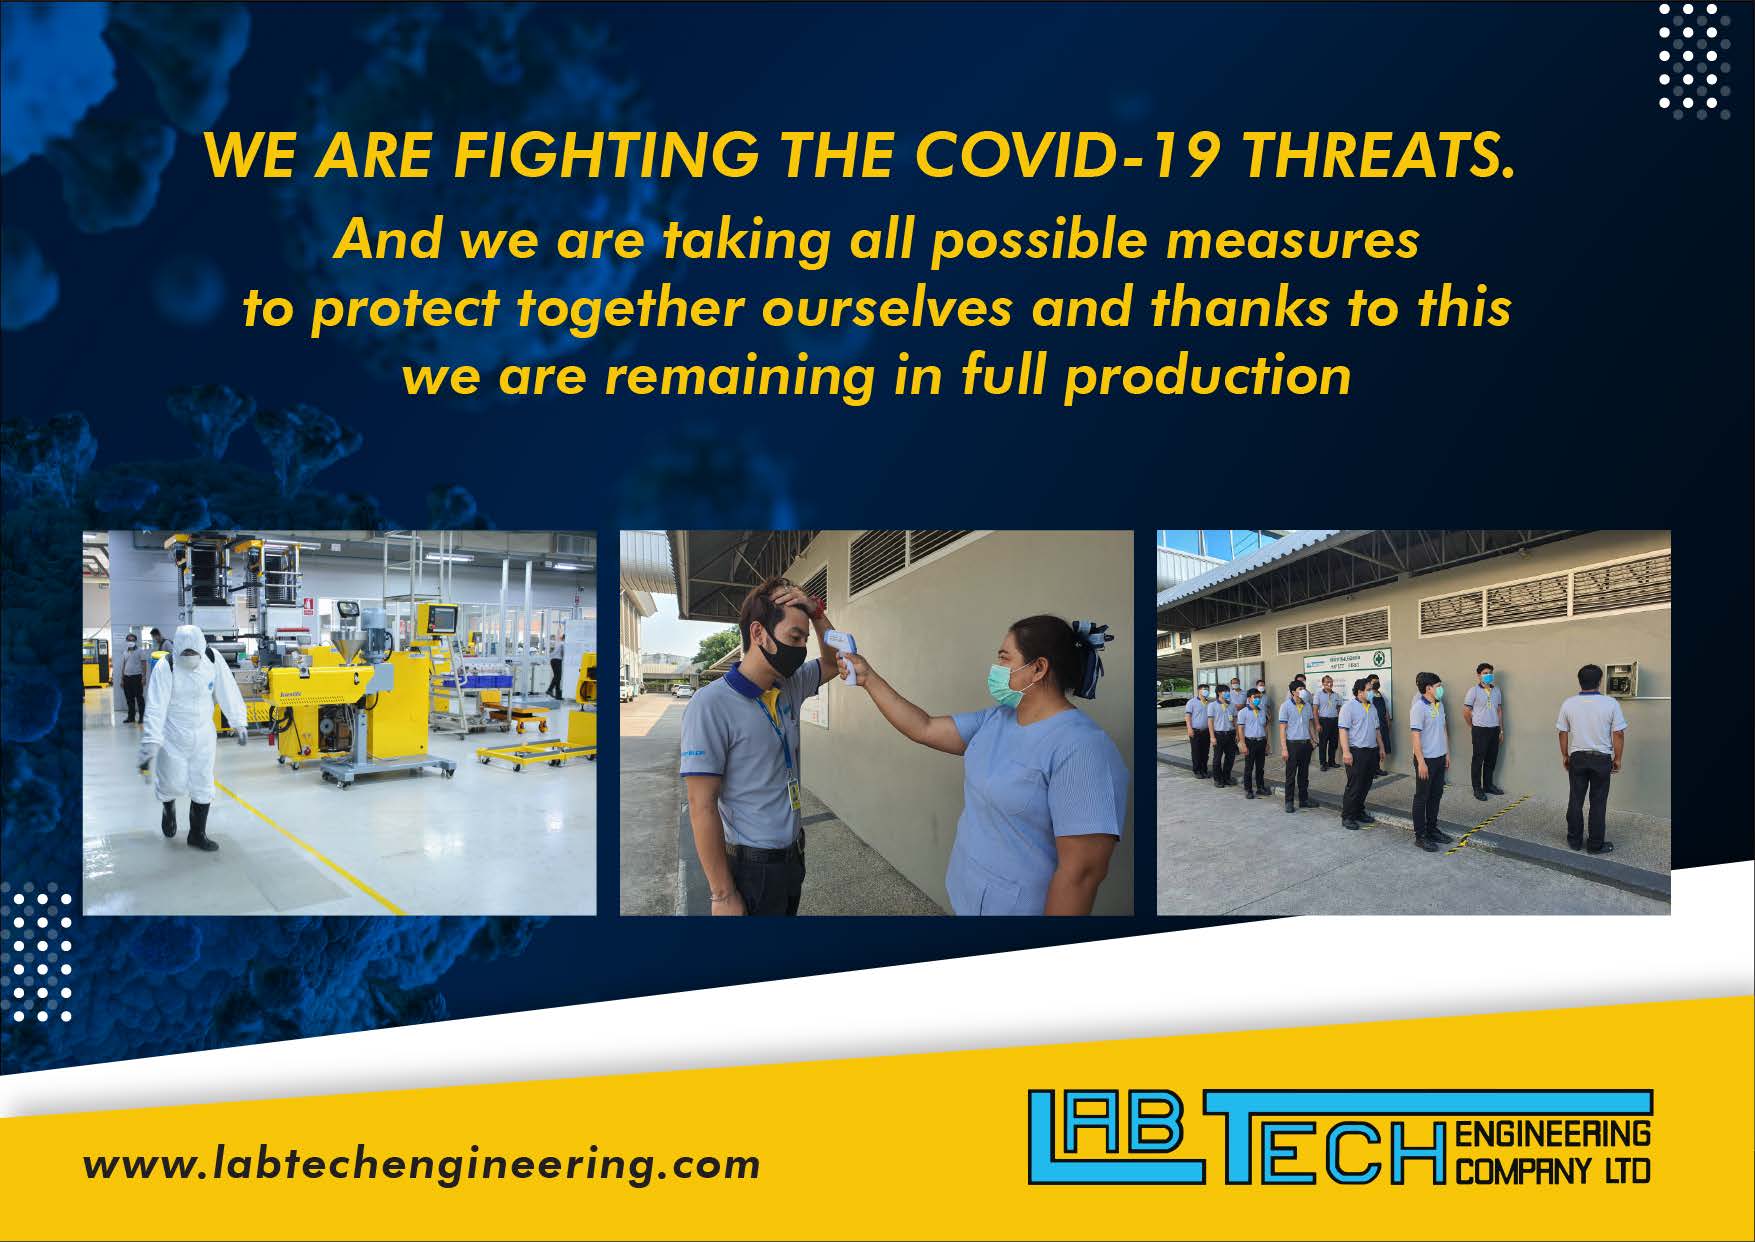 Производство оборудования в условиях пандемии коронавируса - введены строгие меры безопасности на производственных площадках